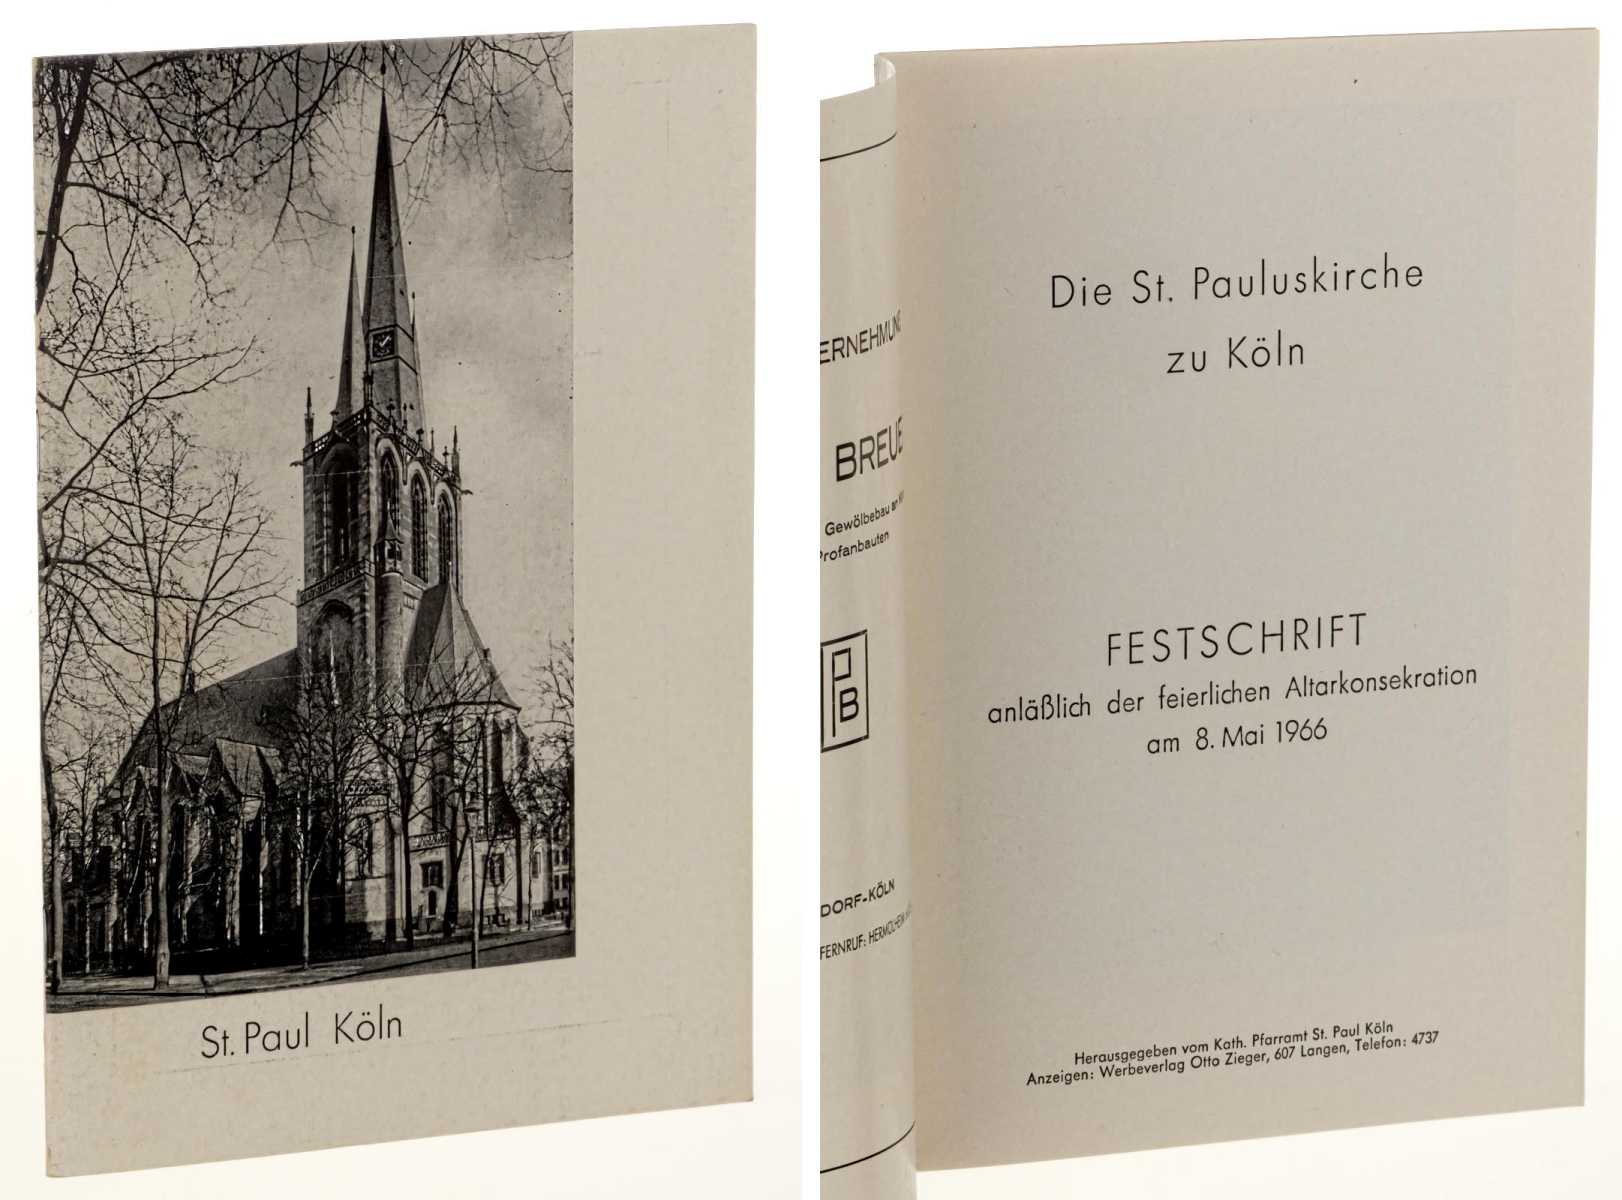 Die St. Pauluskirche zu Köln.  Festschrift anläßlich der feierlichen Altarkonsekration am 8. Mai 1966. 